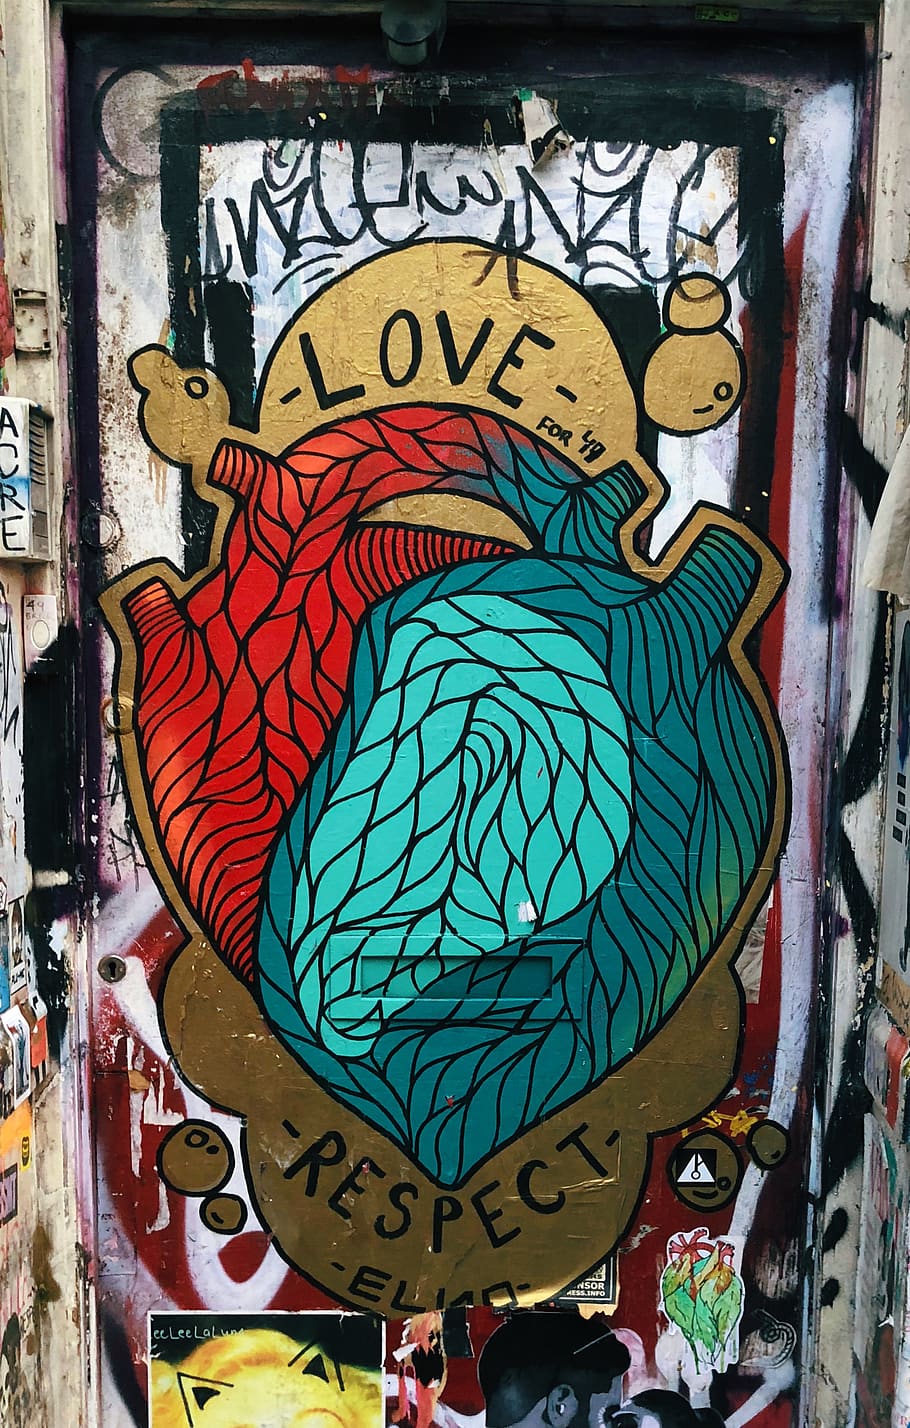 graffiti love heart drawings